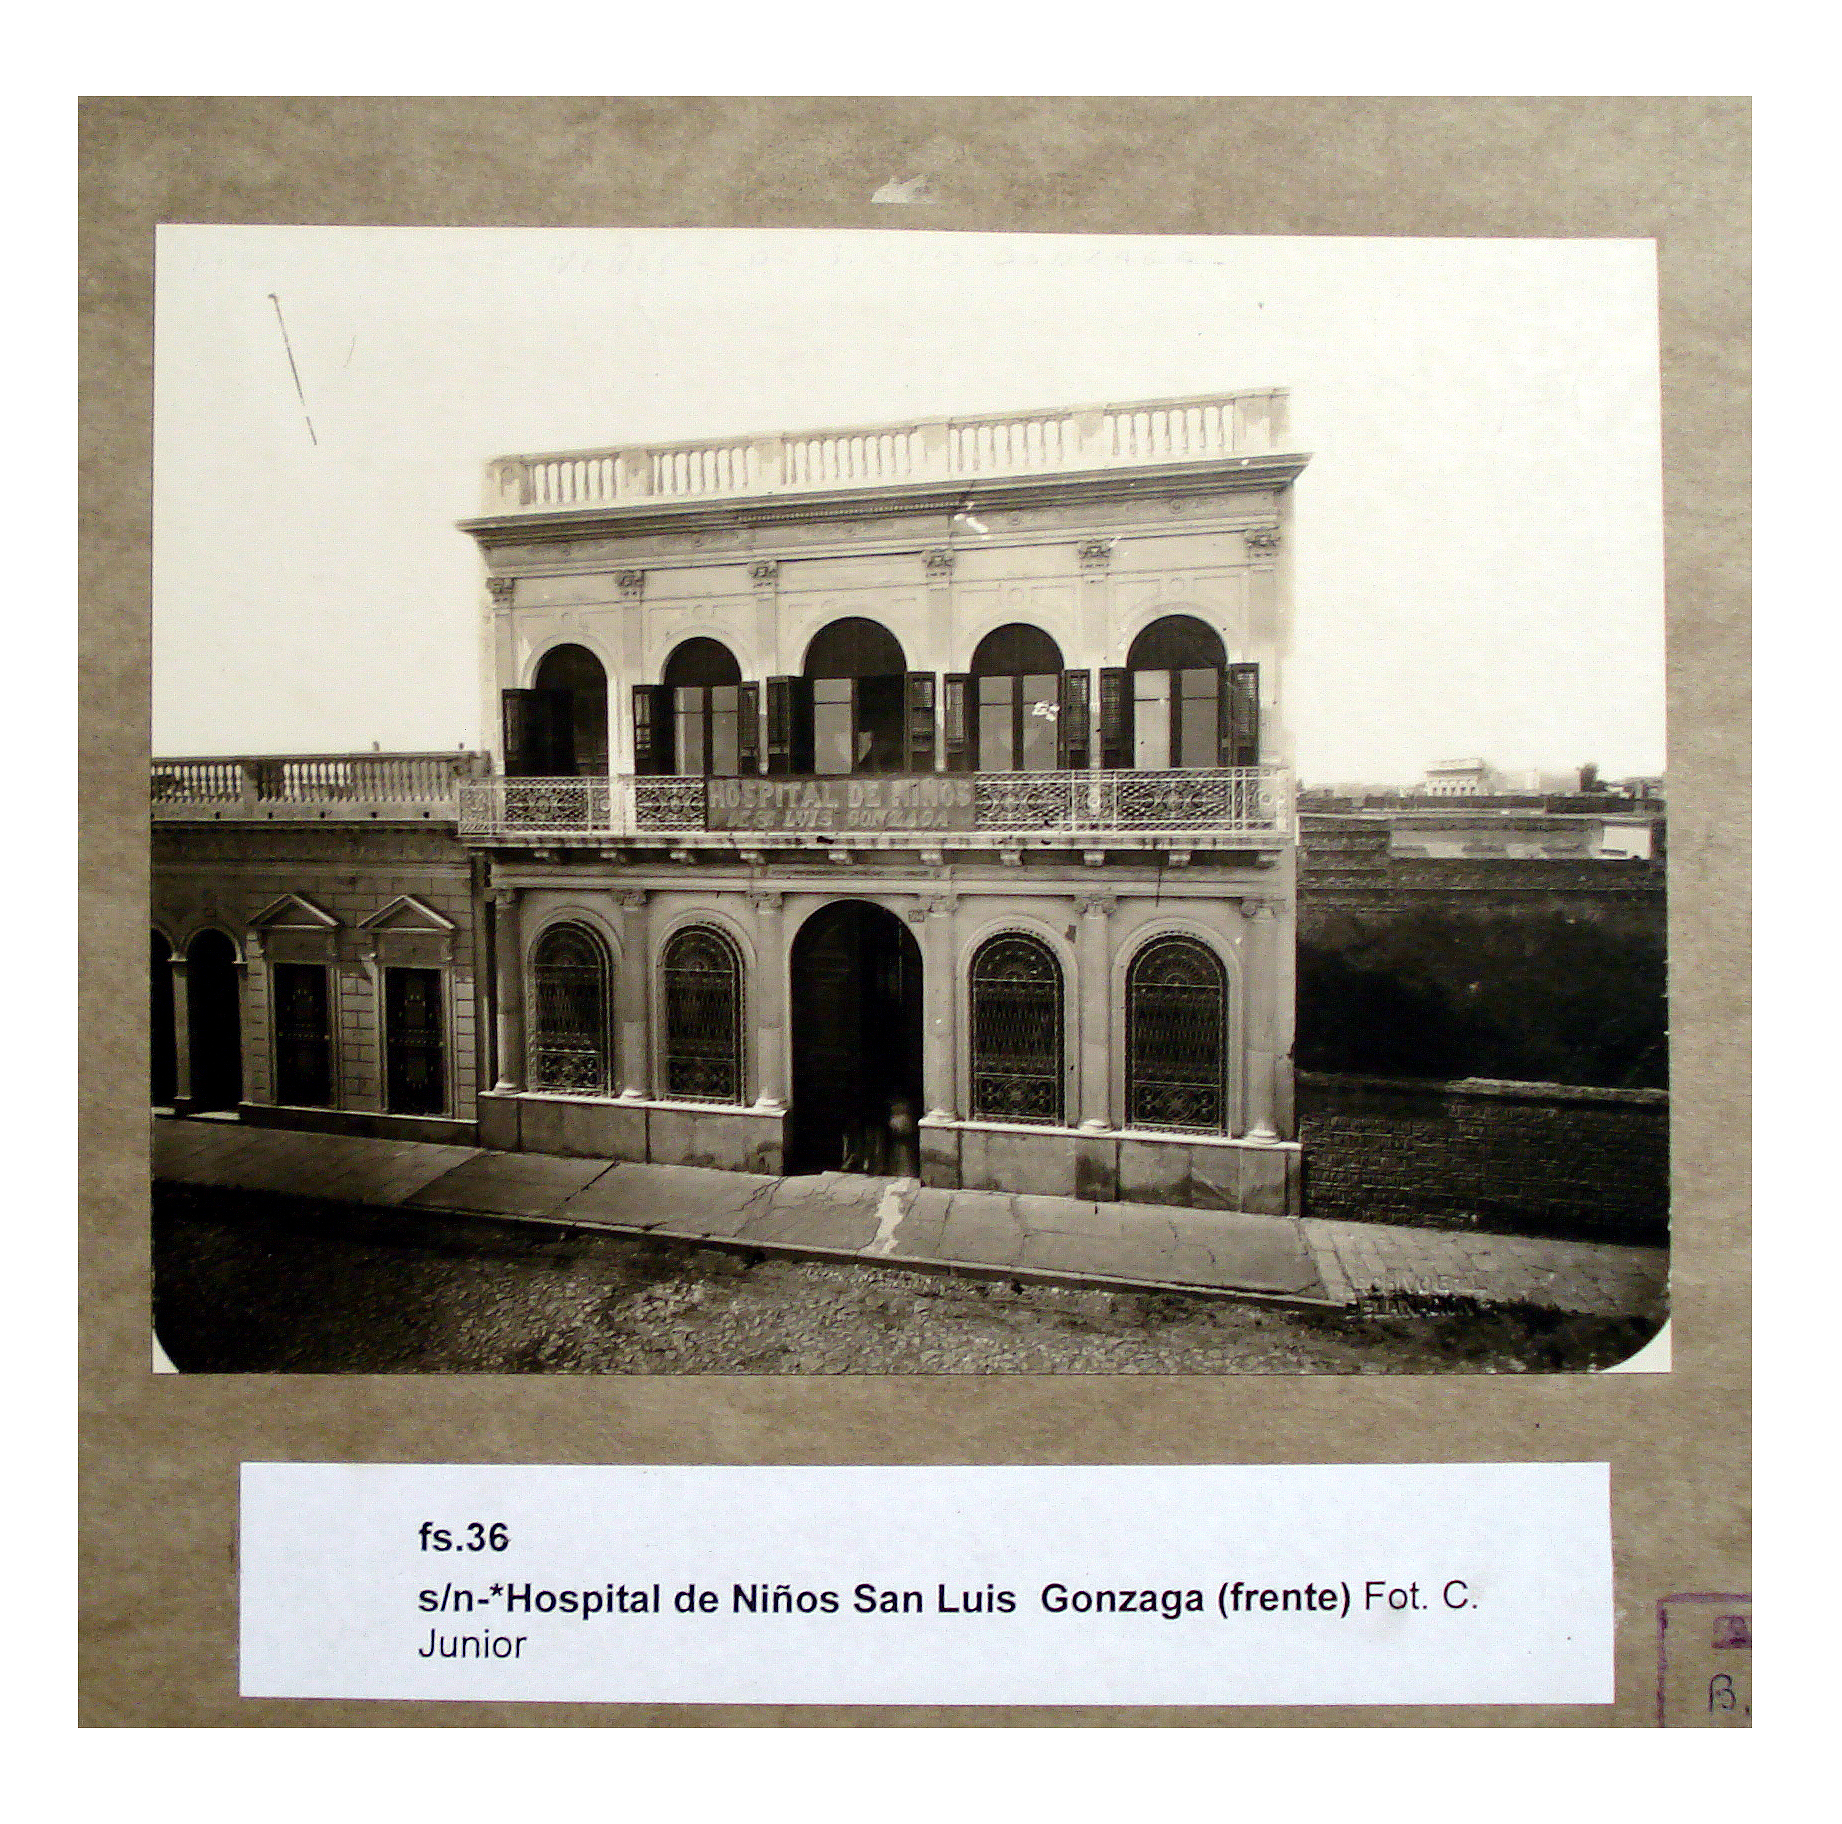 Hospital de Niños San Luis Gonzaga